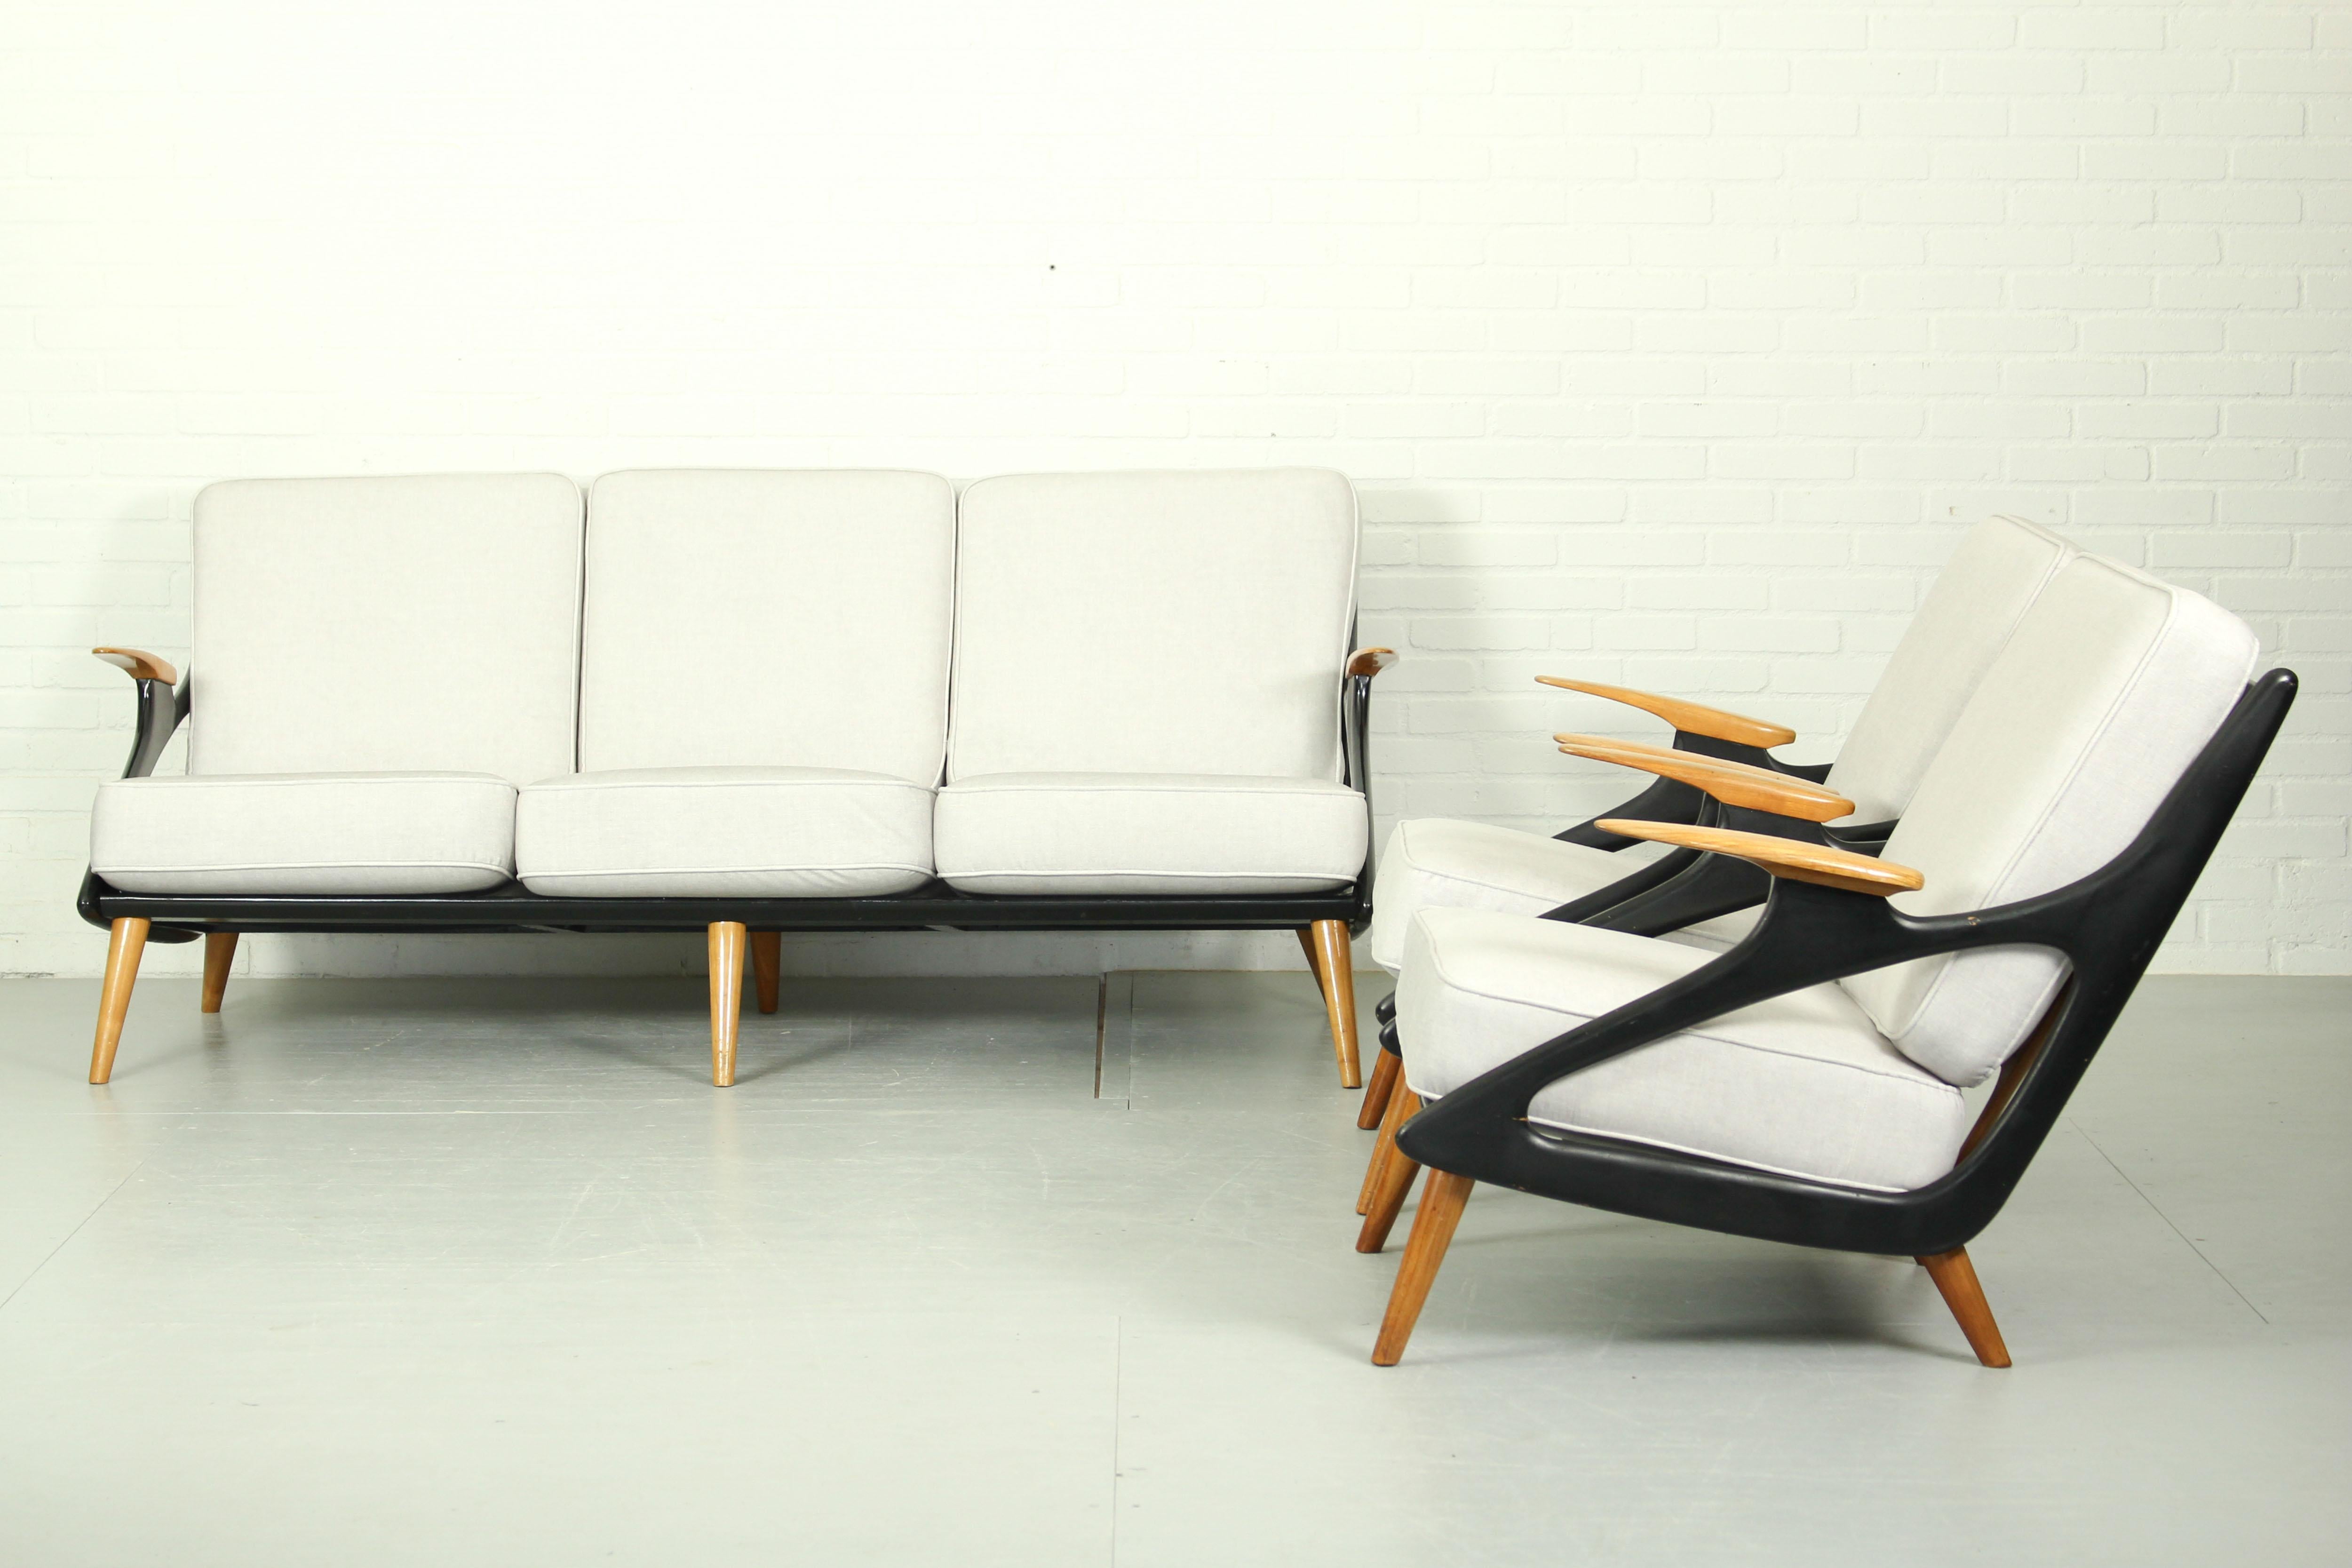 Magnifique ensemble de salon de Sprij / Spruij Holland, années 1950.  Superbe canapé et chaise longue incurvés.  Bois peint en noir en combinaison avec un accoudoir en pin. Les coussins d'origine ont été récemment retapissés dans une belle couleur